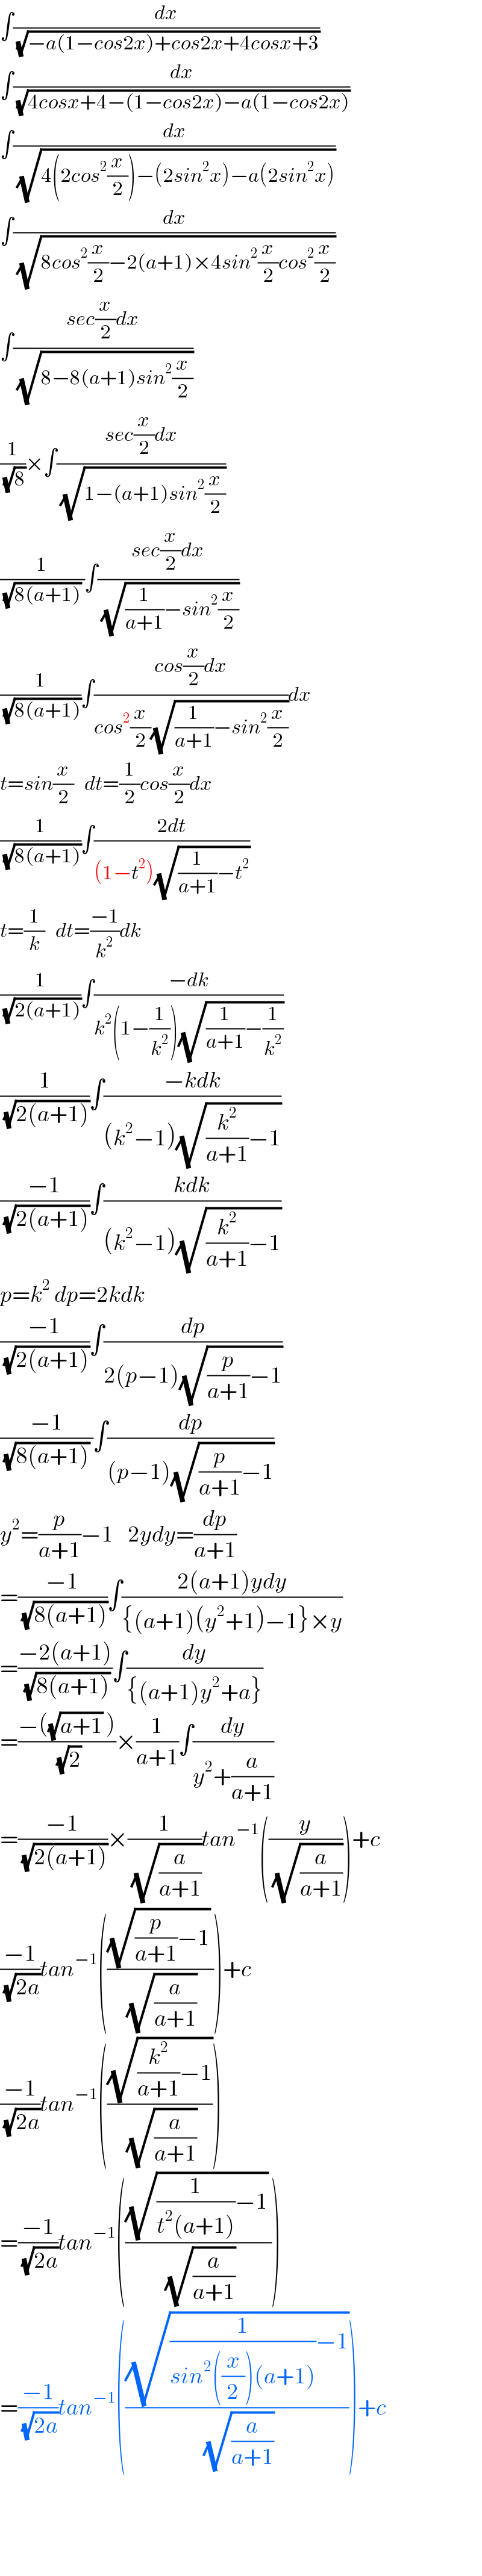 ∫(dx/(√(−a(1−cos2x)+cos2x+4cosx+3)))  ∫(dx/(√(4cosx+4−(1−cos2x)−a(1−cos2x))))  ∫(dx/(√(4(2cos^2 (x/2))−(2sin^2 x)−a(2sin^2 x))))  ∫(dx/(√(8cos^2 (x/2)−2(a+1)×4sin^2 (x/2)cos^2 (x/2))))  ∫((sec(x/2)dx)/(√(8−8(a+1)sin^2 (x/2))))  (1/(√8))×∫((sec(x/2)dx)/(√(1−(a+1)sin^2 (x/2))))  (1/((√(8(a+1))) ))∫((sec(x/2)dx)/(√((1/(a+1))−sin^2 (x/2))))  (1/(√(8(a+1))))∫((cos(x/2)dx)/(cos^2 (x/2)(√((1/(a+1))−sin^2 (x/2)))))dx  t=sin(x/2)   dt=(1/2)cos(x/2)dx  (1/(√(8(a+1))))∫((2dt)/((1−t^2 )(√((1/(a+1))−t^2 ))))  t=(1/k)   dt=((−1)/k^2 )dk  (1/(√(2(a+1))))∫((−dk)/(k^2 (1−(1/k^2 ))(√((1/(a+1))−(1/k^2 )))))  (1/(√(2(a+1))))∫((−kdk)/((k^2 −1)(√((k^2 /(a+1))−1))))  ((−1)/(√(2(a+1))))∫((kdk)/((k^2 −1)(√((k^2 /(a+1))−1))))  p=k^2  dp=2kdk  ((−1)/(√(2(a+1))))∫(dp/(2(p−1)(√((p/(a+1))−1))))  ((−1)/((√(8(a+1))) ))∫(dp/((p−1)(√((p/(a+1))−1))))  y^2 =(p/(a+1))−1    2ydy=(dp/(a+1))  =((−1)/(√(8(a+1))))∫((2(a+1)ydy)/({(a+1)(y^2 +1)−1}×y))  =((−2(a+1))/(√(8(a+1))))∫(dy/({(a+1)y^2 +a}))  =((−((√(a+1)) ))/(√2))×(1/(a+1))∫(dy/(y^2 +(a/(a+1))))  =((−1)/(√(2(a+1))))×(1/(√(a/(a+1))))tan^(−1) ((y/(√(a/(a+1)))))+c  ((−1)/(√(2a)))tan^(−1) ((((√((p/(a+1))−1)) )/(√(a/(a+1)))))+c  ((−1)/(√(2a)))tan^(−1) (((√((k^2 /(a+1))−1))/(√(a/(a+1)))))  =((−1)/(√(2a)))tan^(−1) ((((√((1/(t^2 (a+1)))−1)) )/(√(a/(a+1)))))  =((−1)/(√(2a)))tan^(−1) (((√((1/(sin^2 ((x/2))(a+1)))−1))/(√(a/(a+1)))))+c        